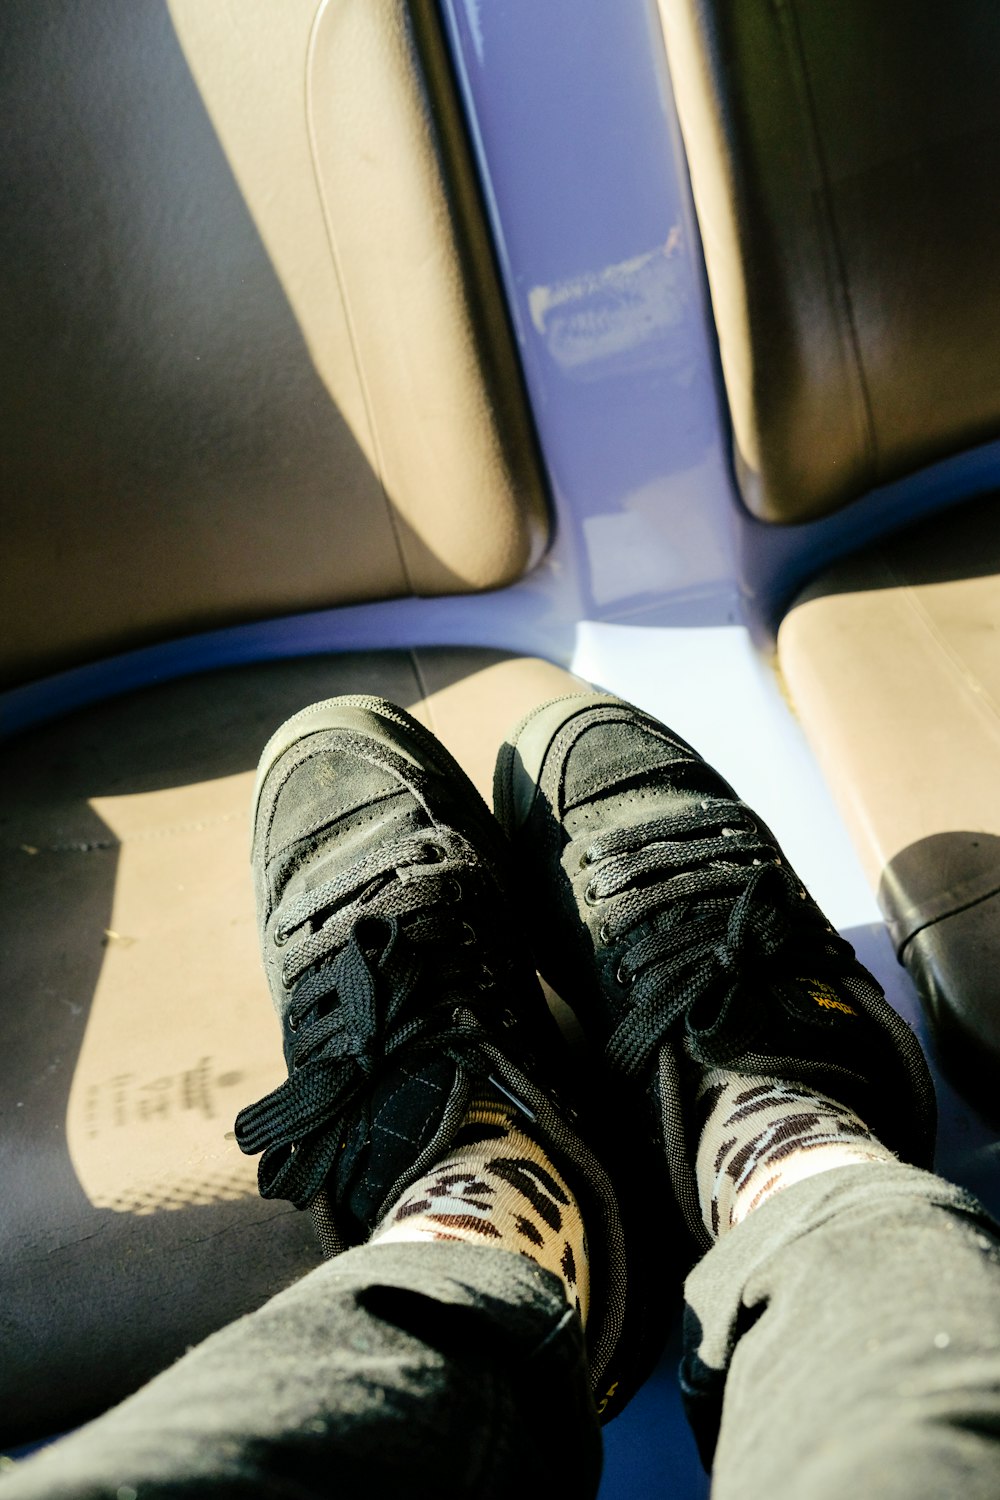 les pieds d’une personne reposant sur un siège dans un train ;